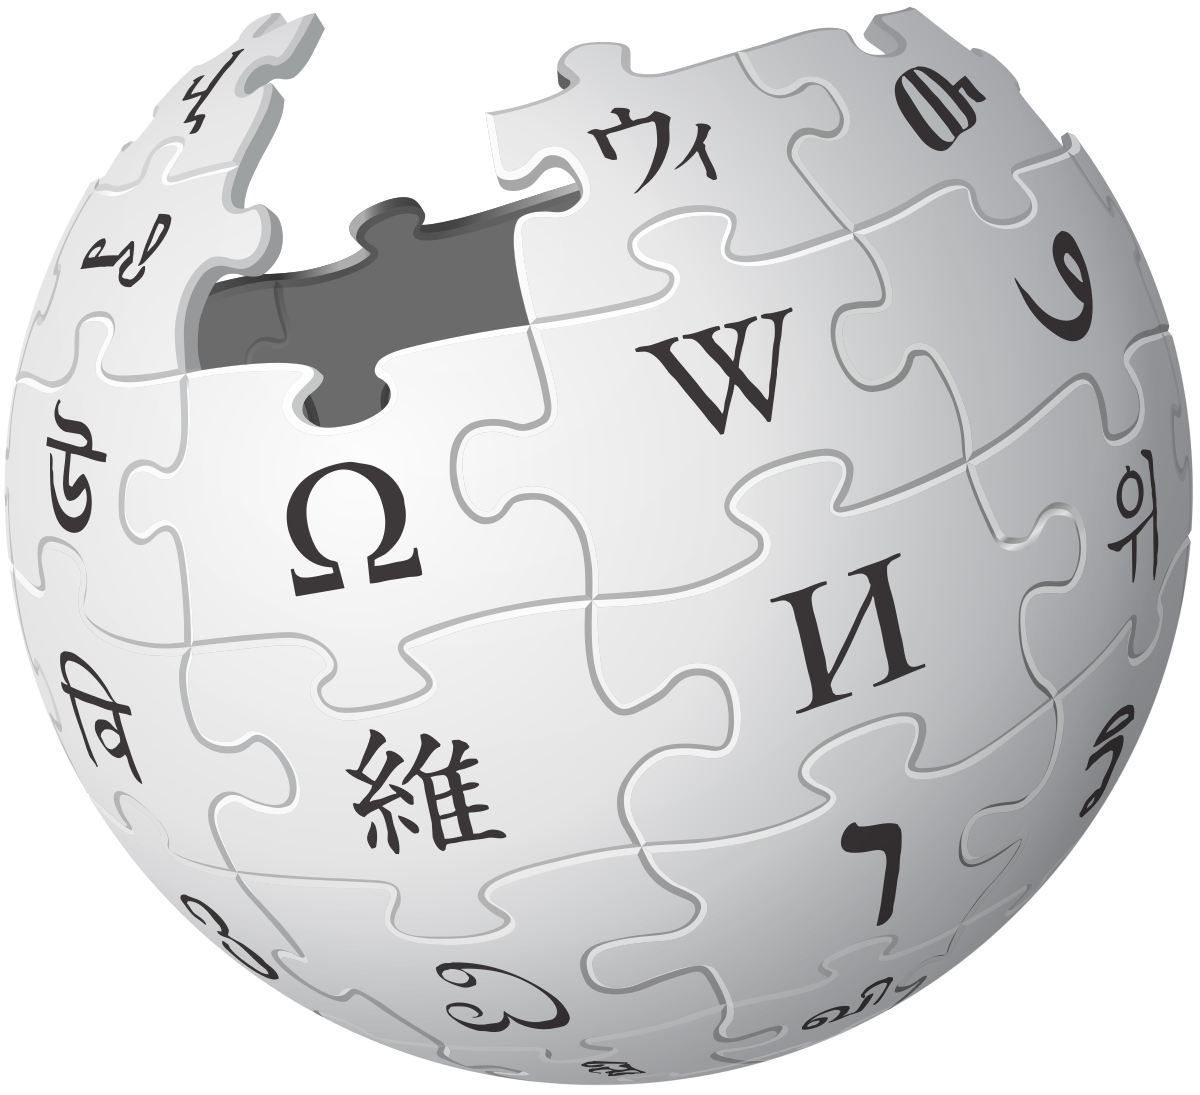 维基百科中文版镜像图下载，Wiki(维基)是什么